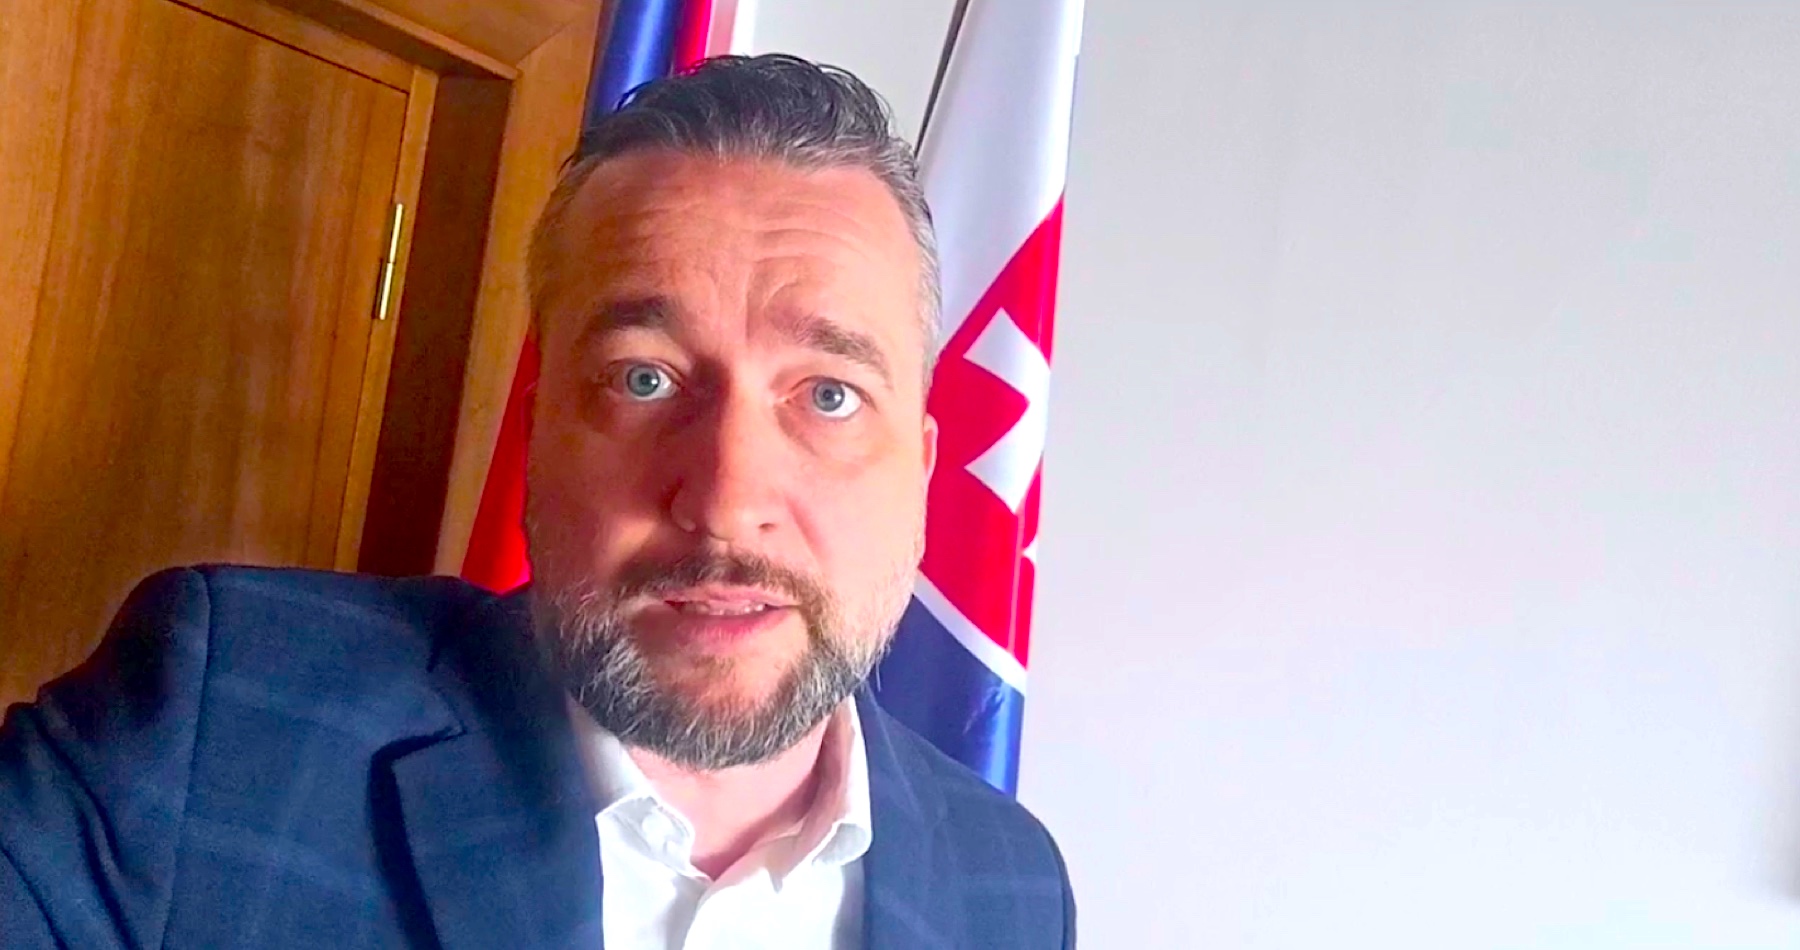 VIDEO: Progresívci si do parlamentu na pomoc zavolali pracovníkov ambasád USA a Veľkej Británie. „Slovensko nie je žiadna kolónia, aby nás tu kontrolovali Američania, ako si spravujeme vlastný štát!,“ odkázal Blaha progresívnym fundamentalistom